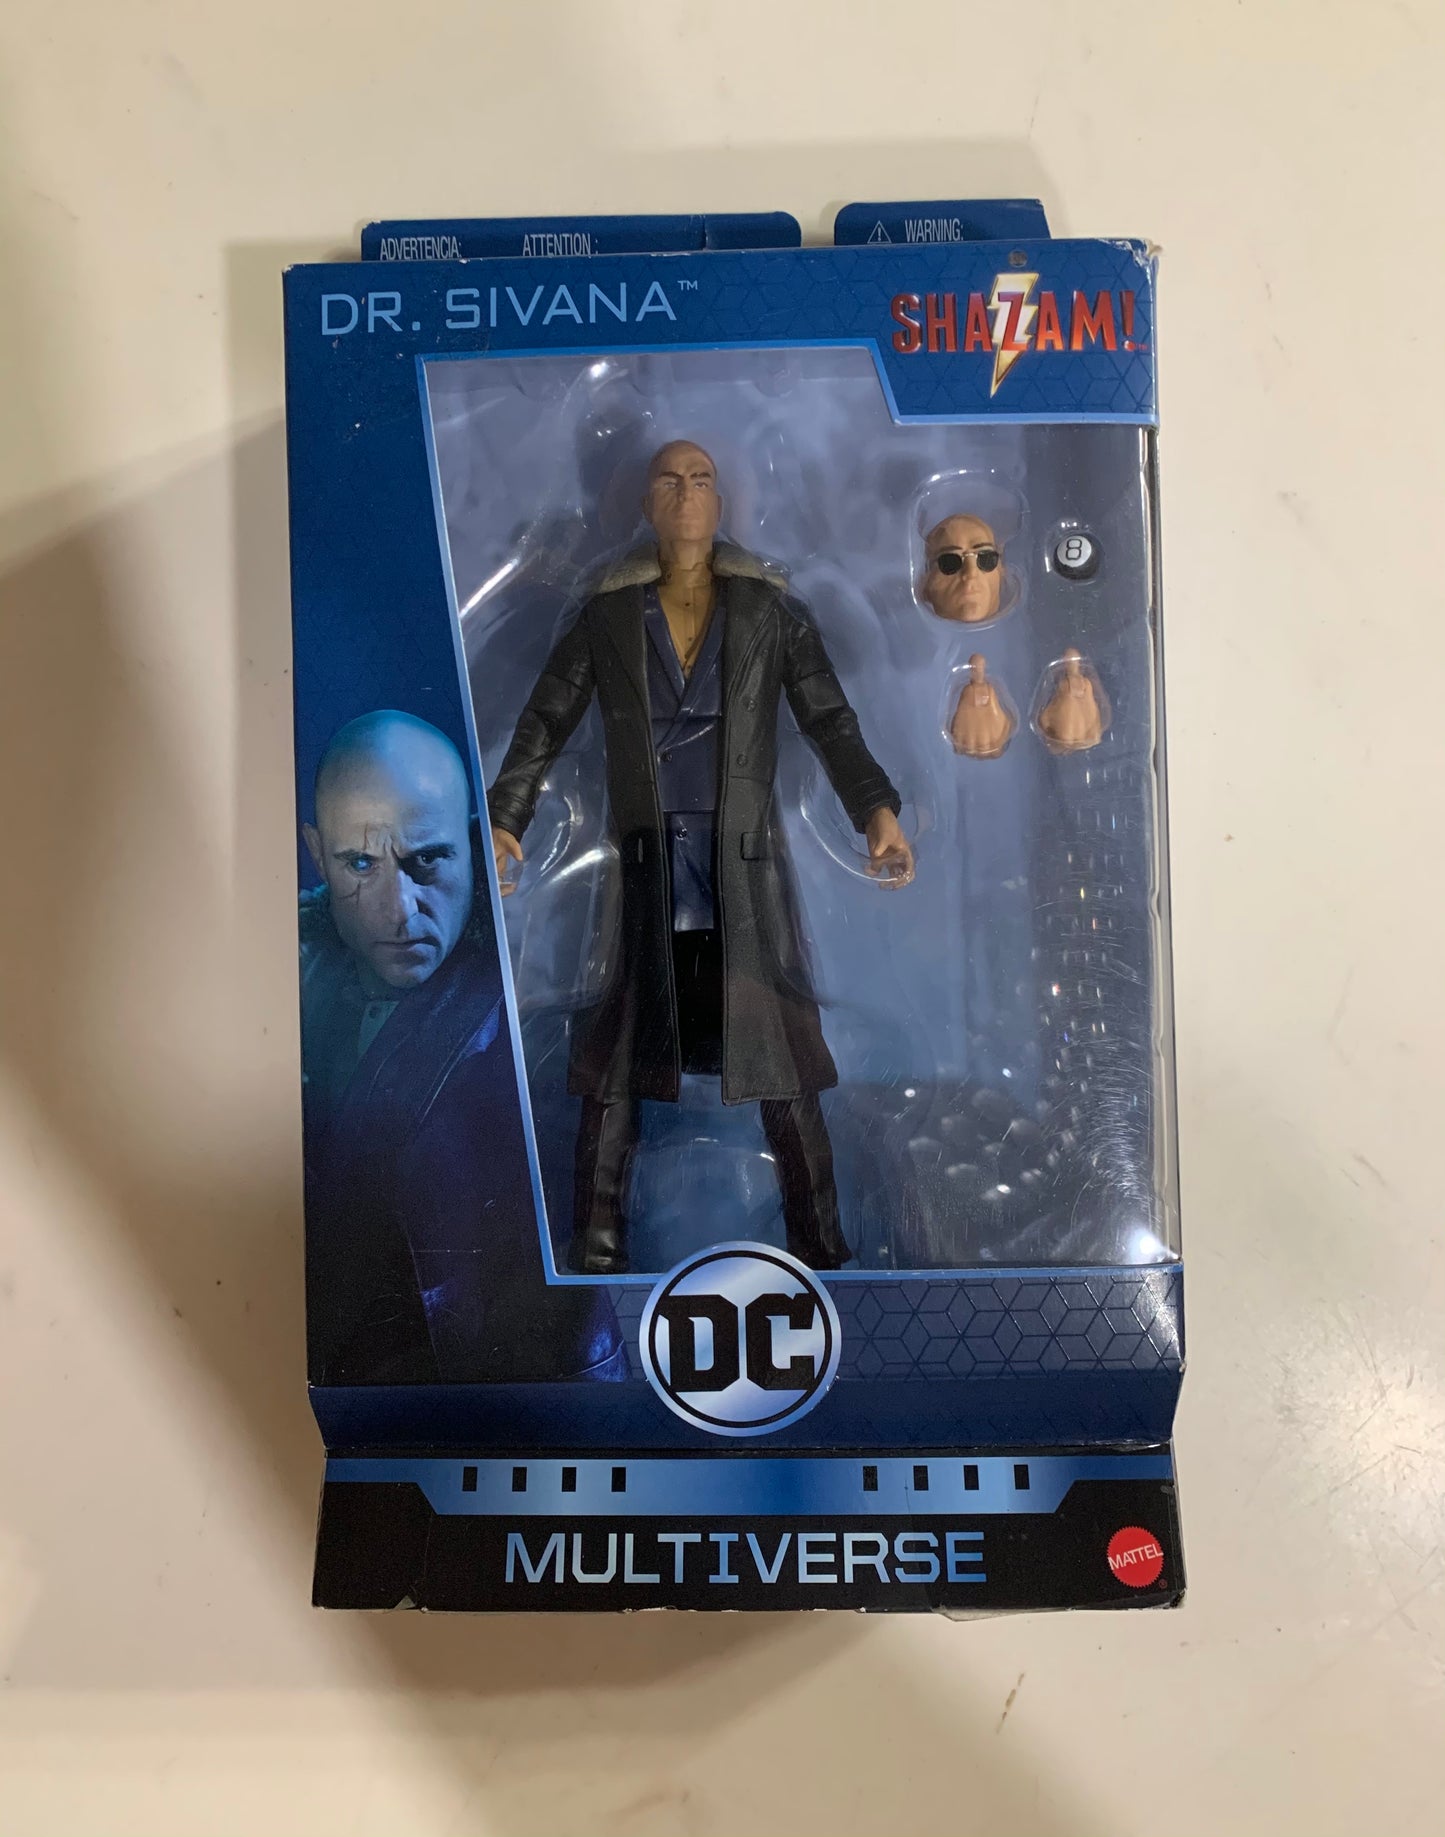 DC Multiverse Shazam! Dr Sivana 6” Action Figure